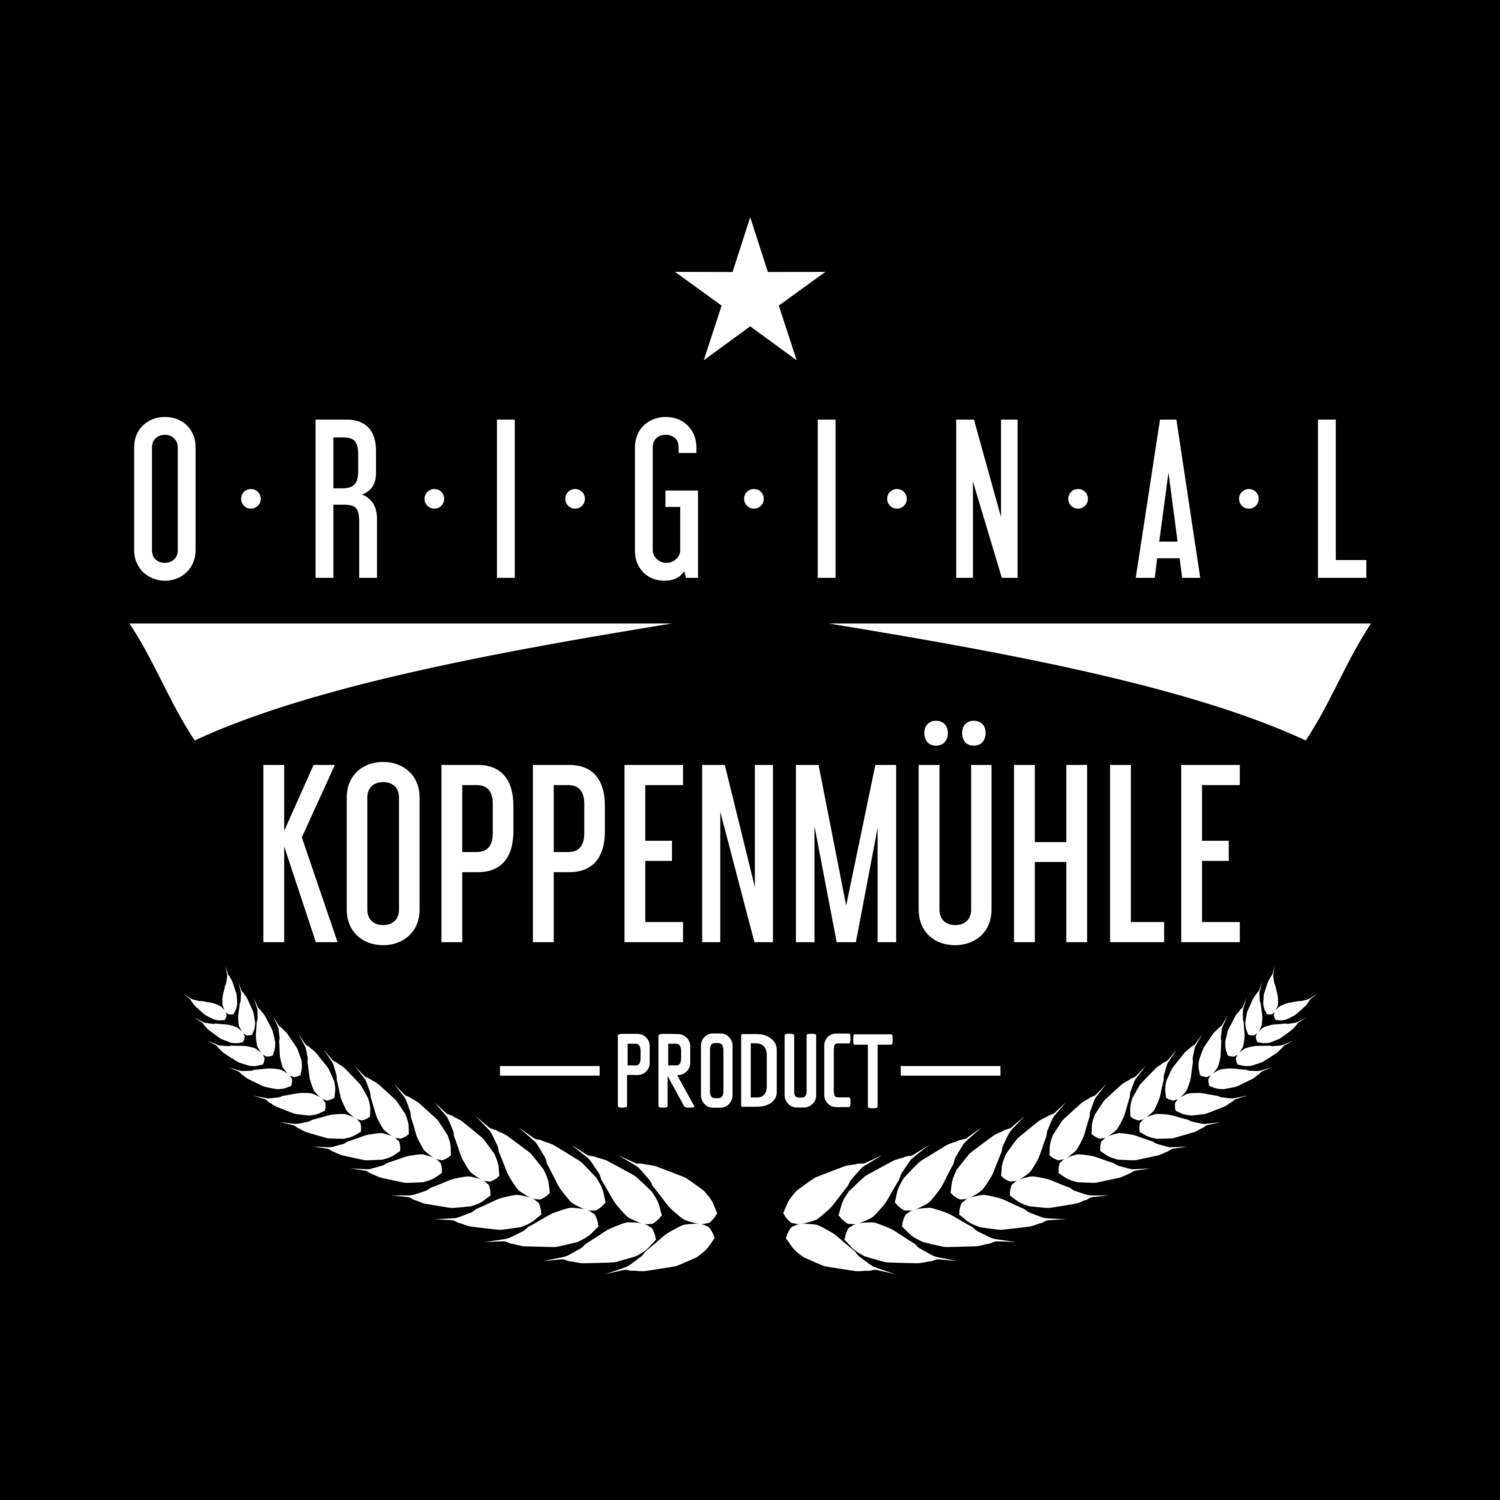 Koppenmühle T-Shirt »Original Product«